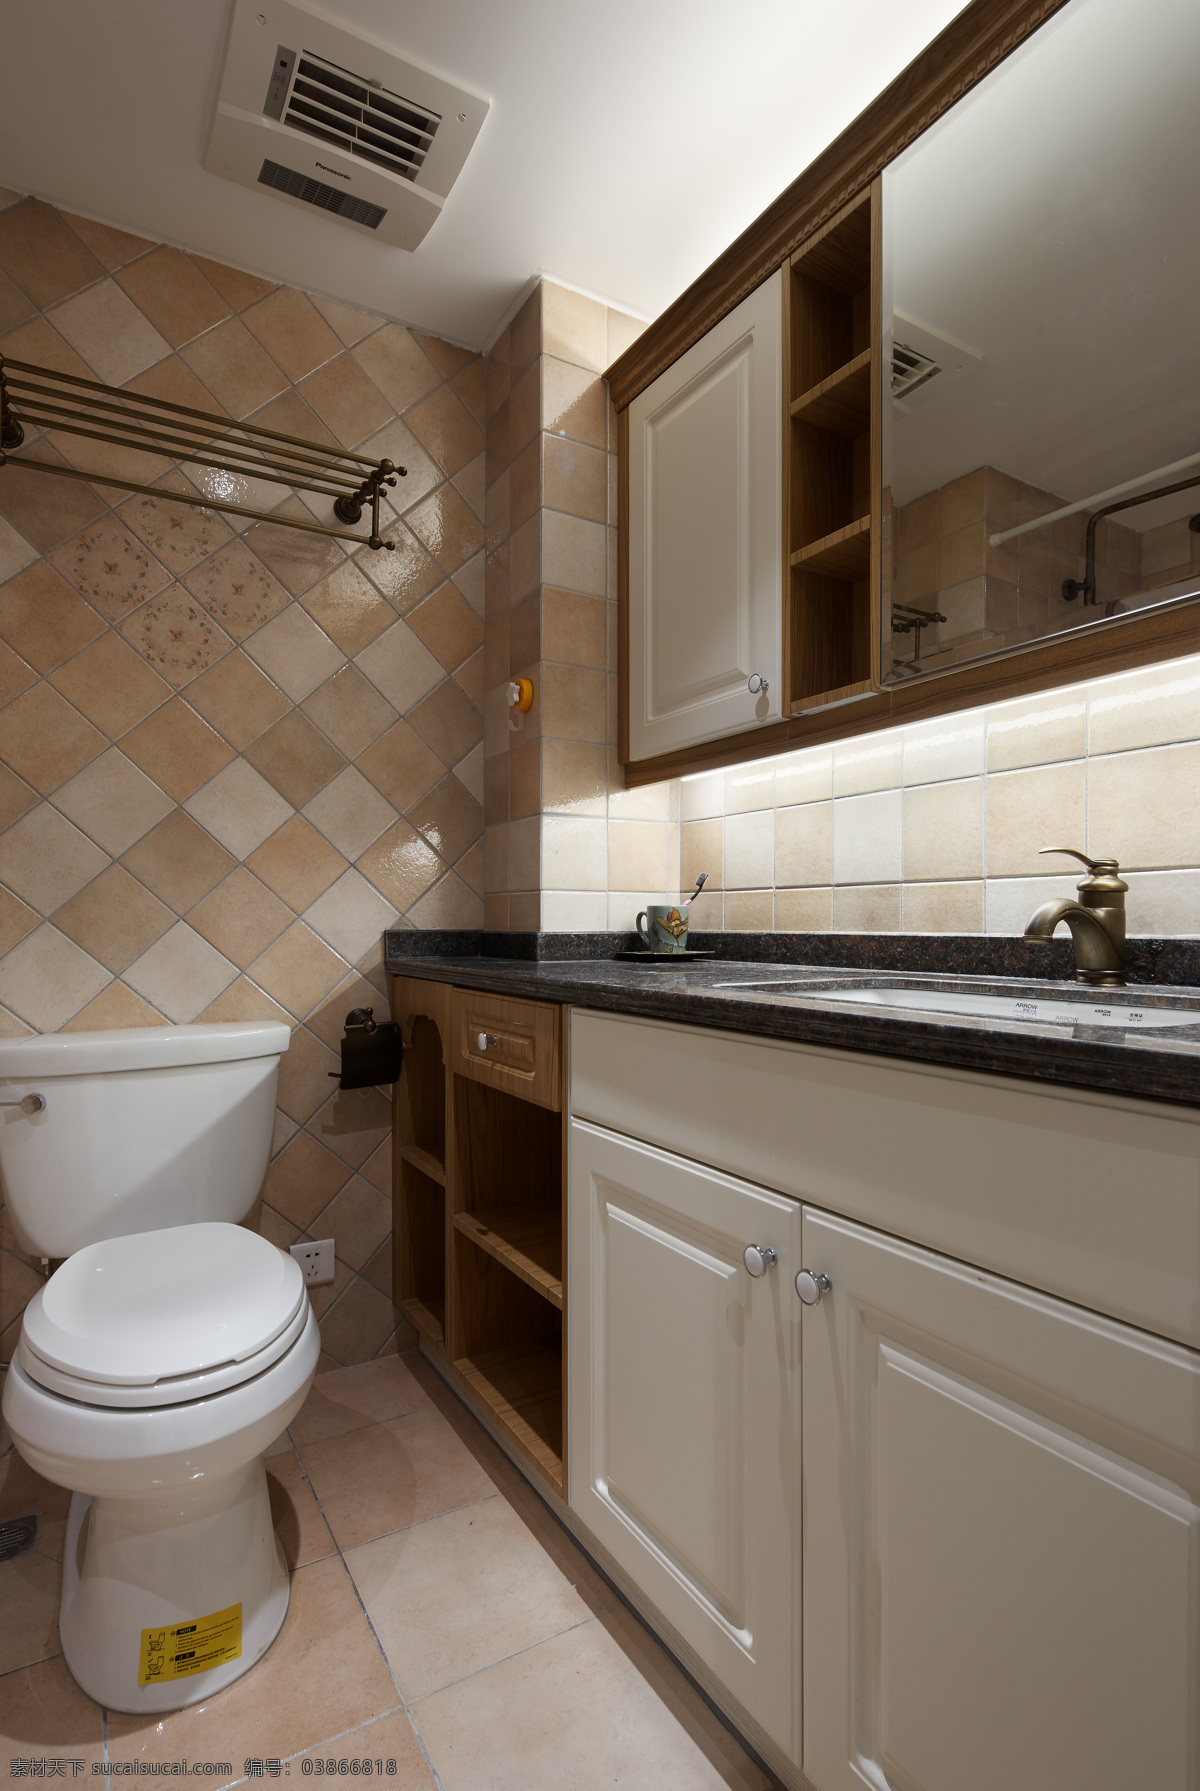 现代 简约 卫生间 瓷砖 地板 室内装修 效果图 白色吊顶 卫生间装修 浴室装修